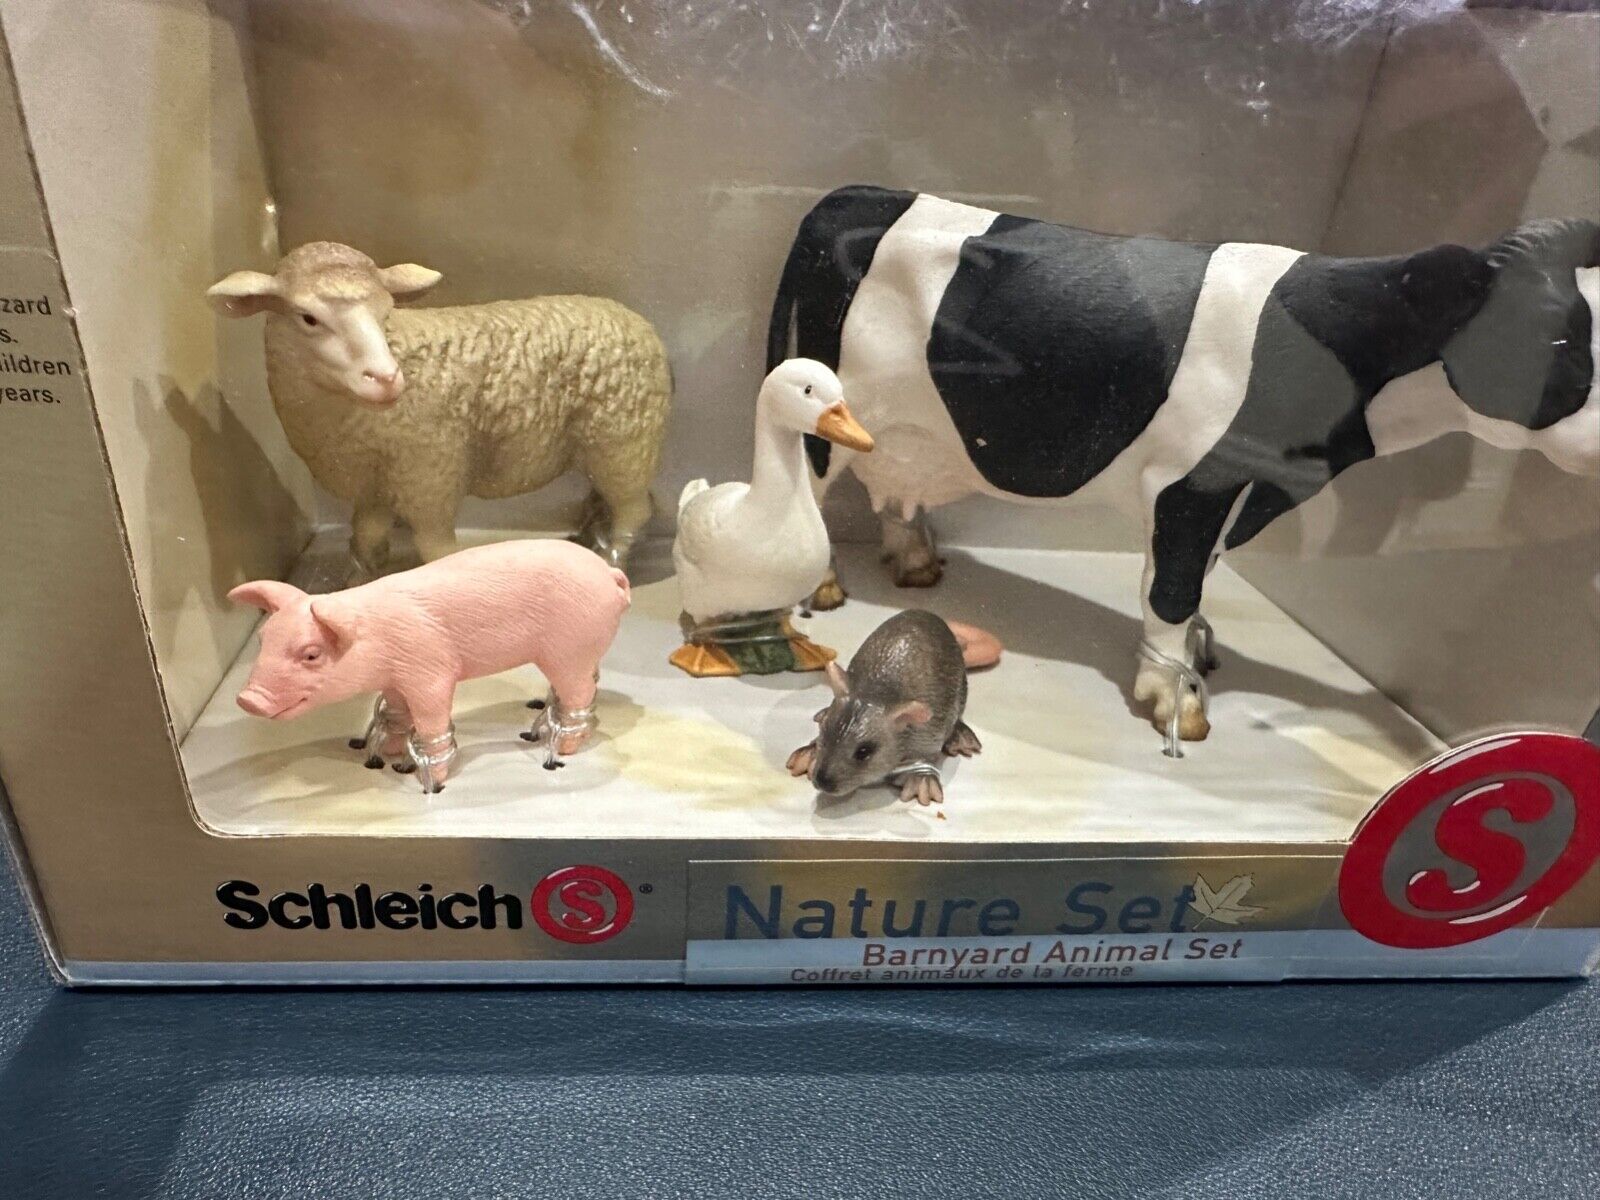 Rare, Retired Schleich Barnyard Animals Set Mint In Original Box 5 Piece Set